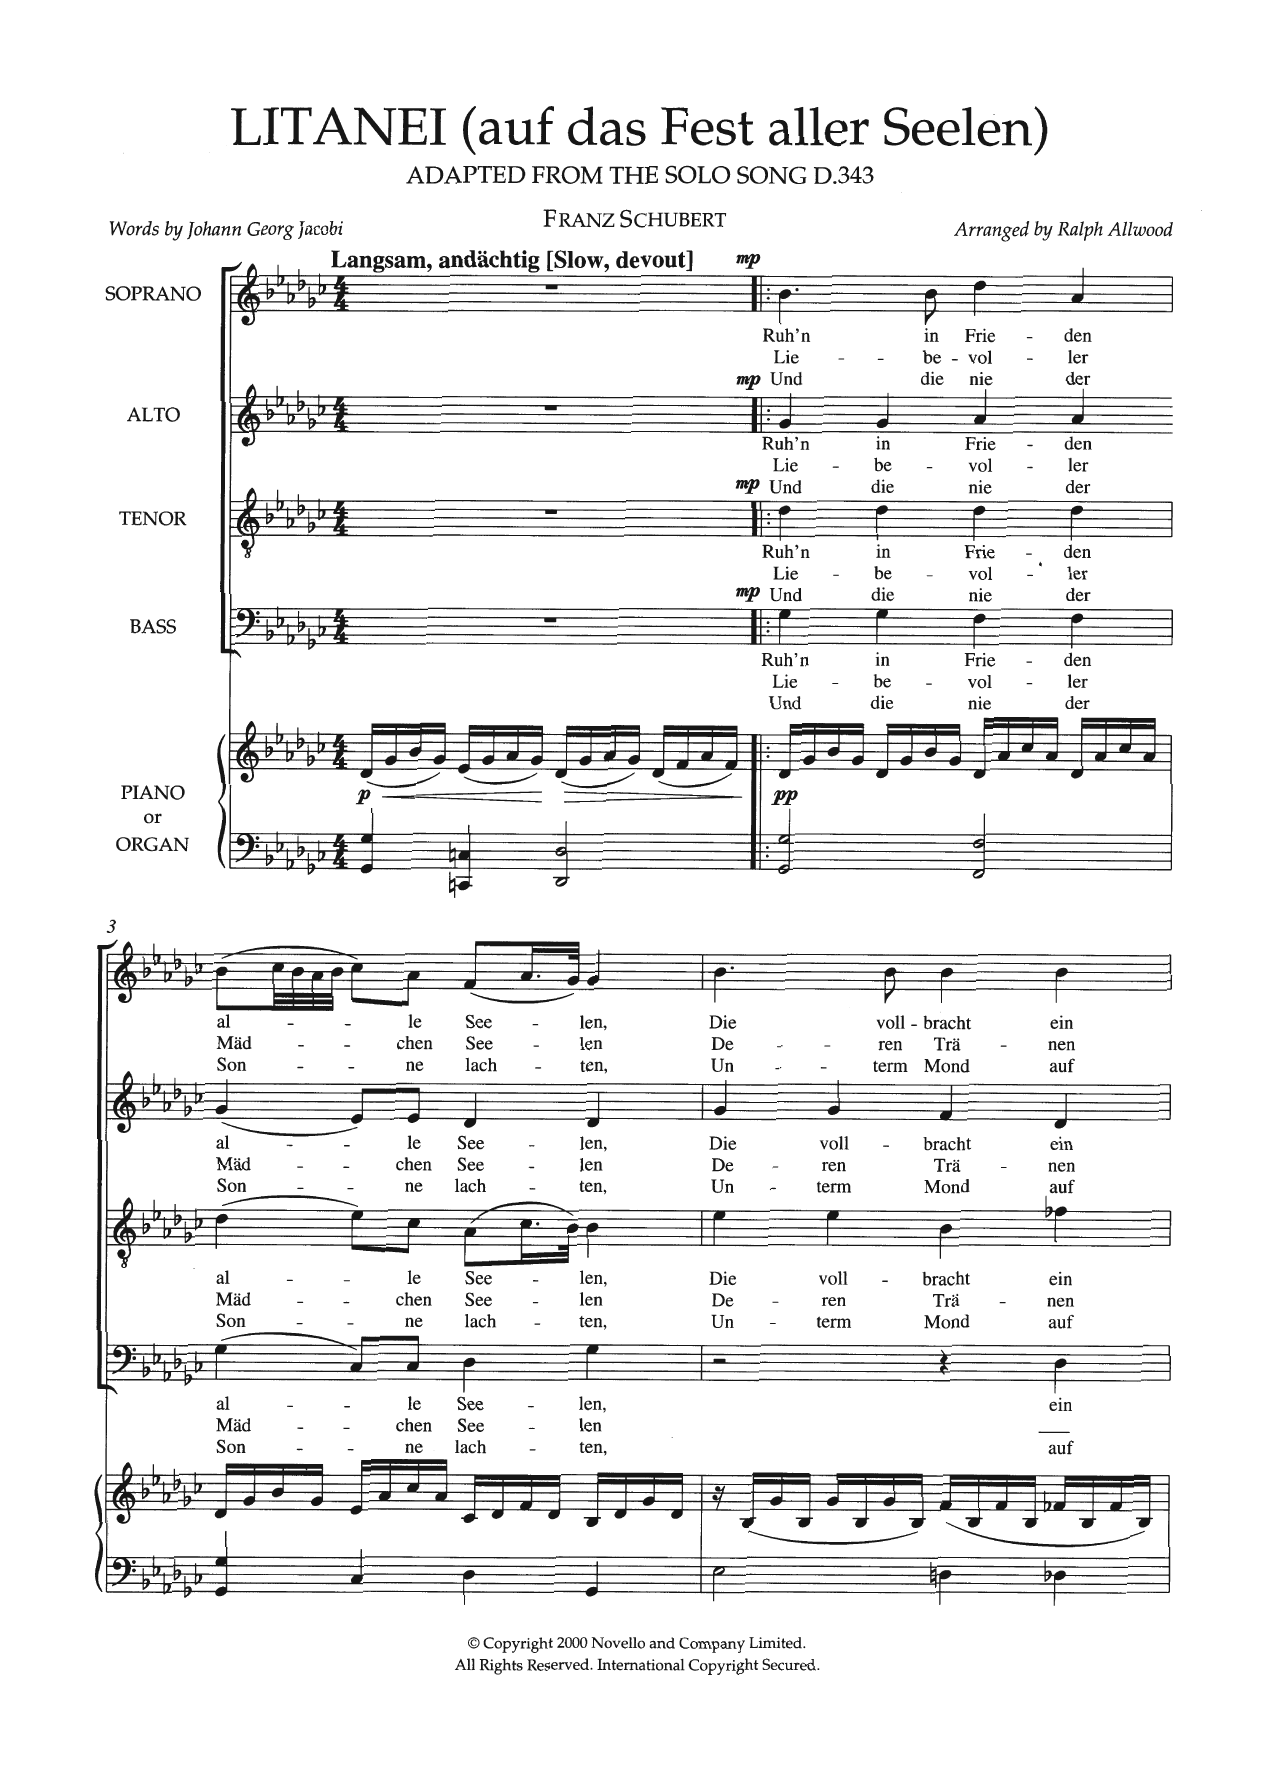 Franz Schubert Litanei (Auf Das Fest Aller Seelen) (arr. Ralph Allwood) Sheet Music Notes & Chords for SATB Choir - Download or Print PDF